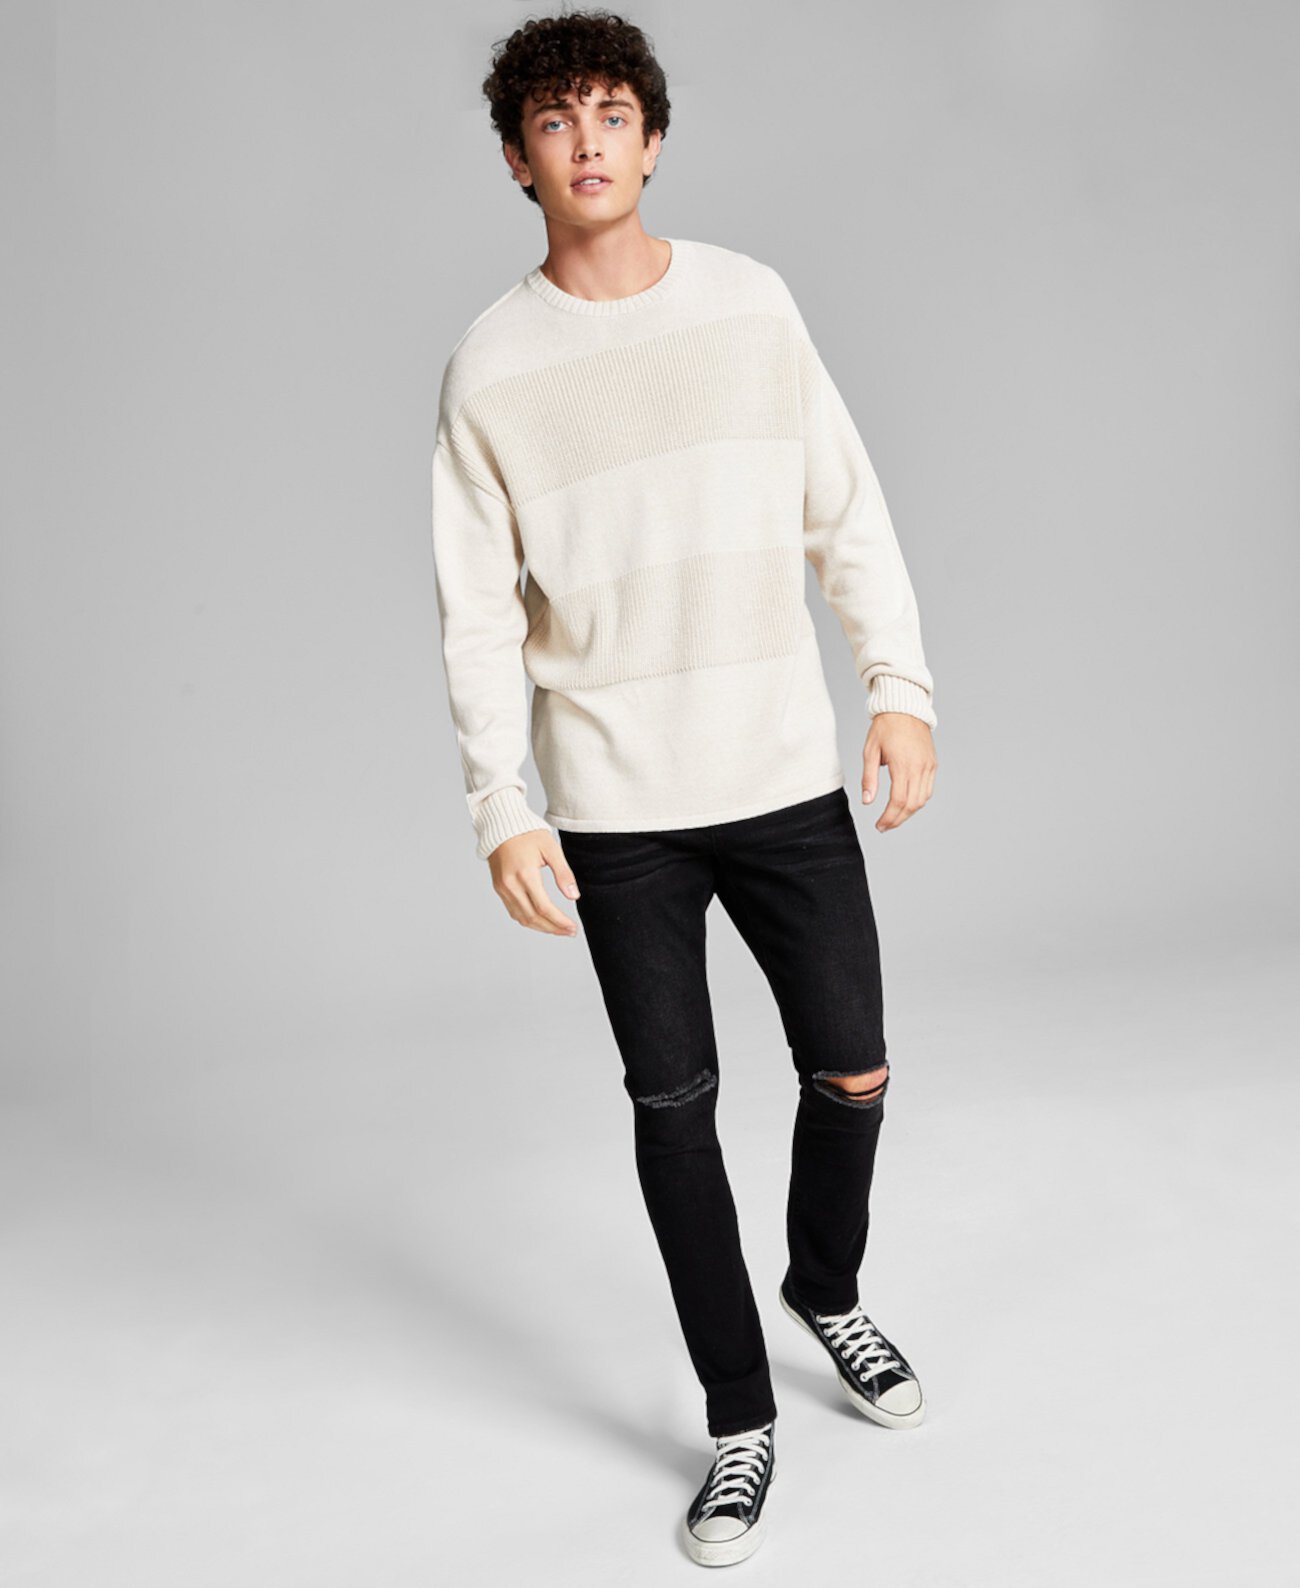 Мужской свитер с текстурированной полосой, созданный для Macy's And Now This